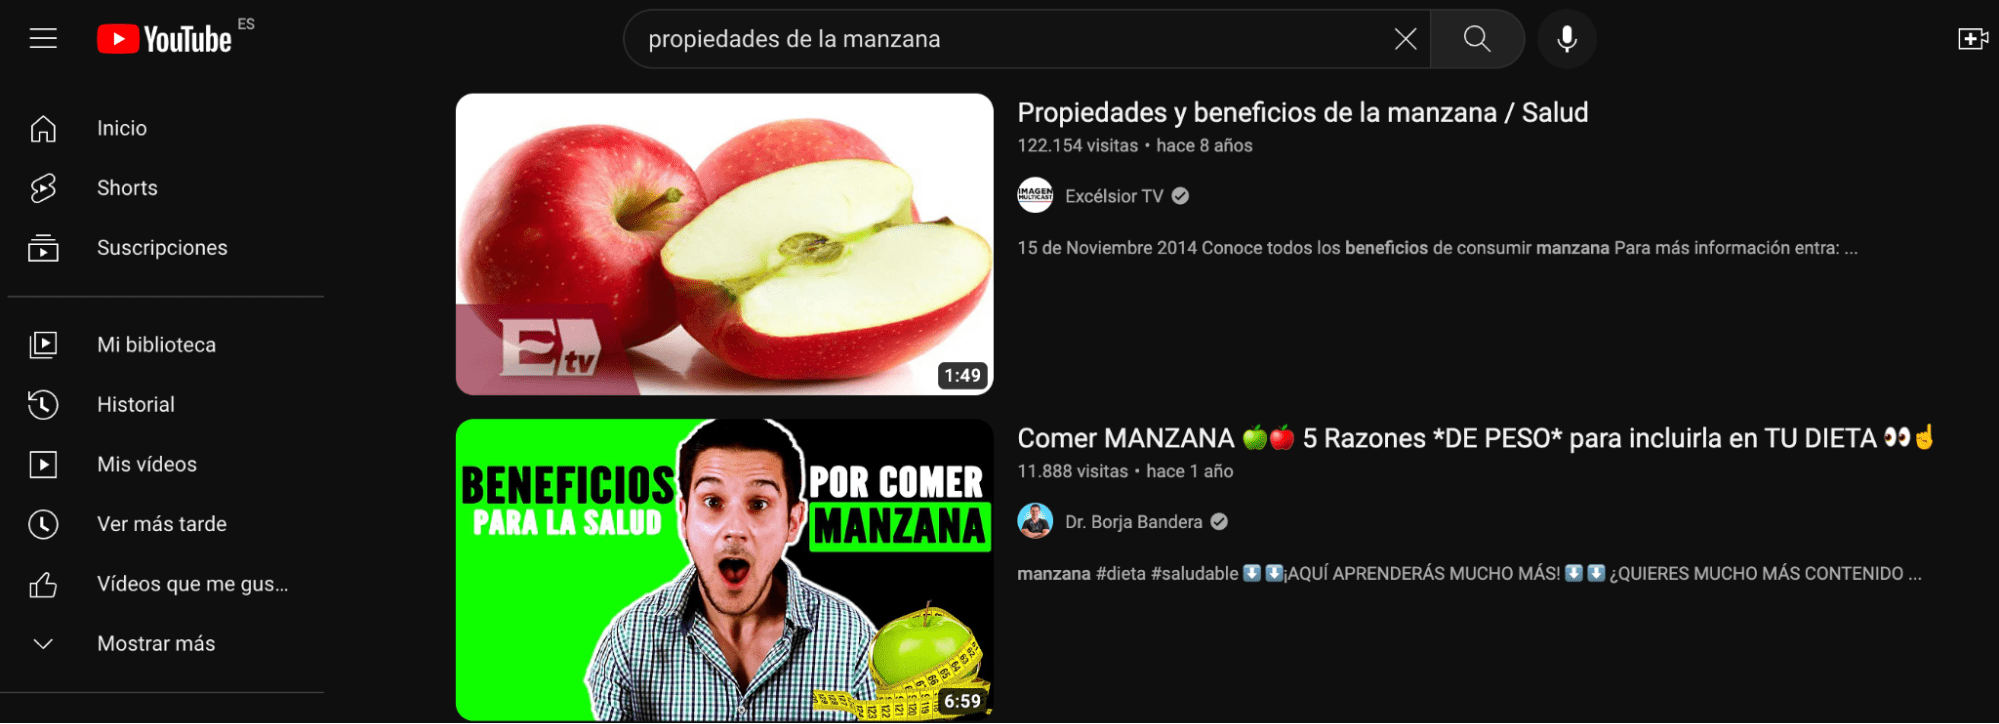 Resultados en YouTube para propiedades de la manzana